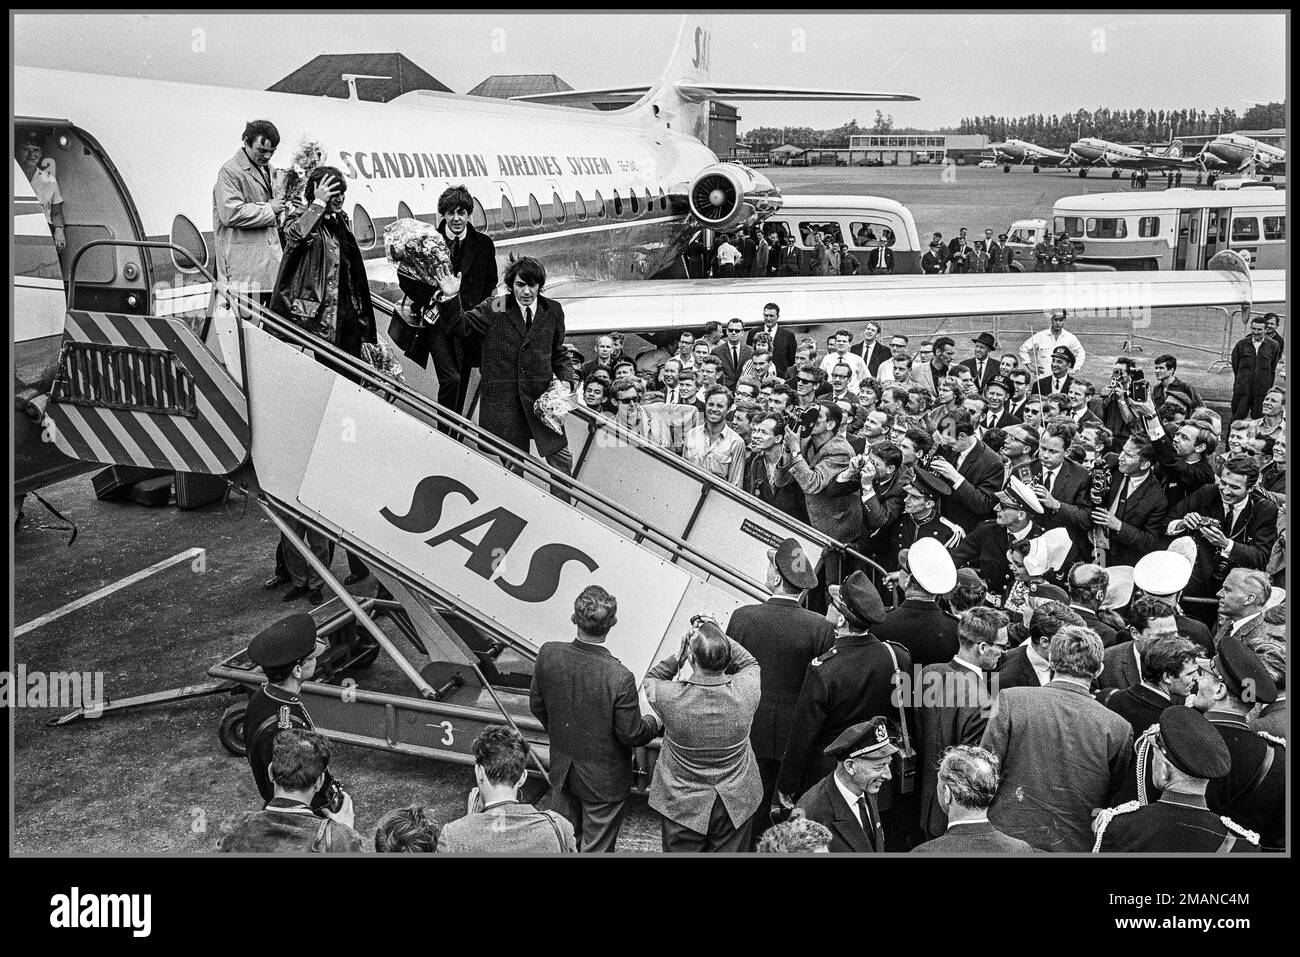 THE BEATLES Music Group Pop Band années 1960 arrivée des Beatles à l'aéroport de Schiphol Hollande, les Beatles sur les escaliers de vol avec l'écrasement des photographes de presse sur le tarmac Date : 5 juin 1964 lieu : Hollande du Nord, Schiphol Banque D'Images